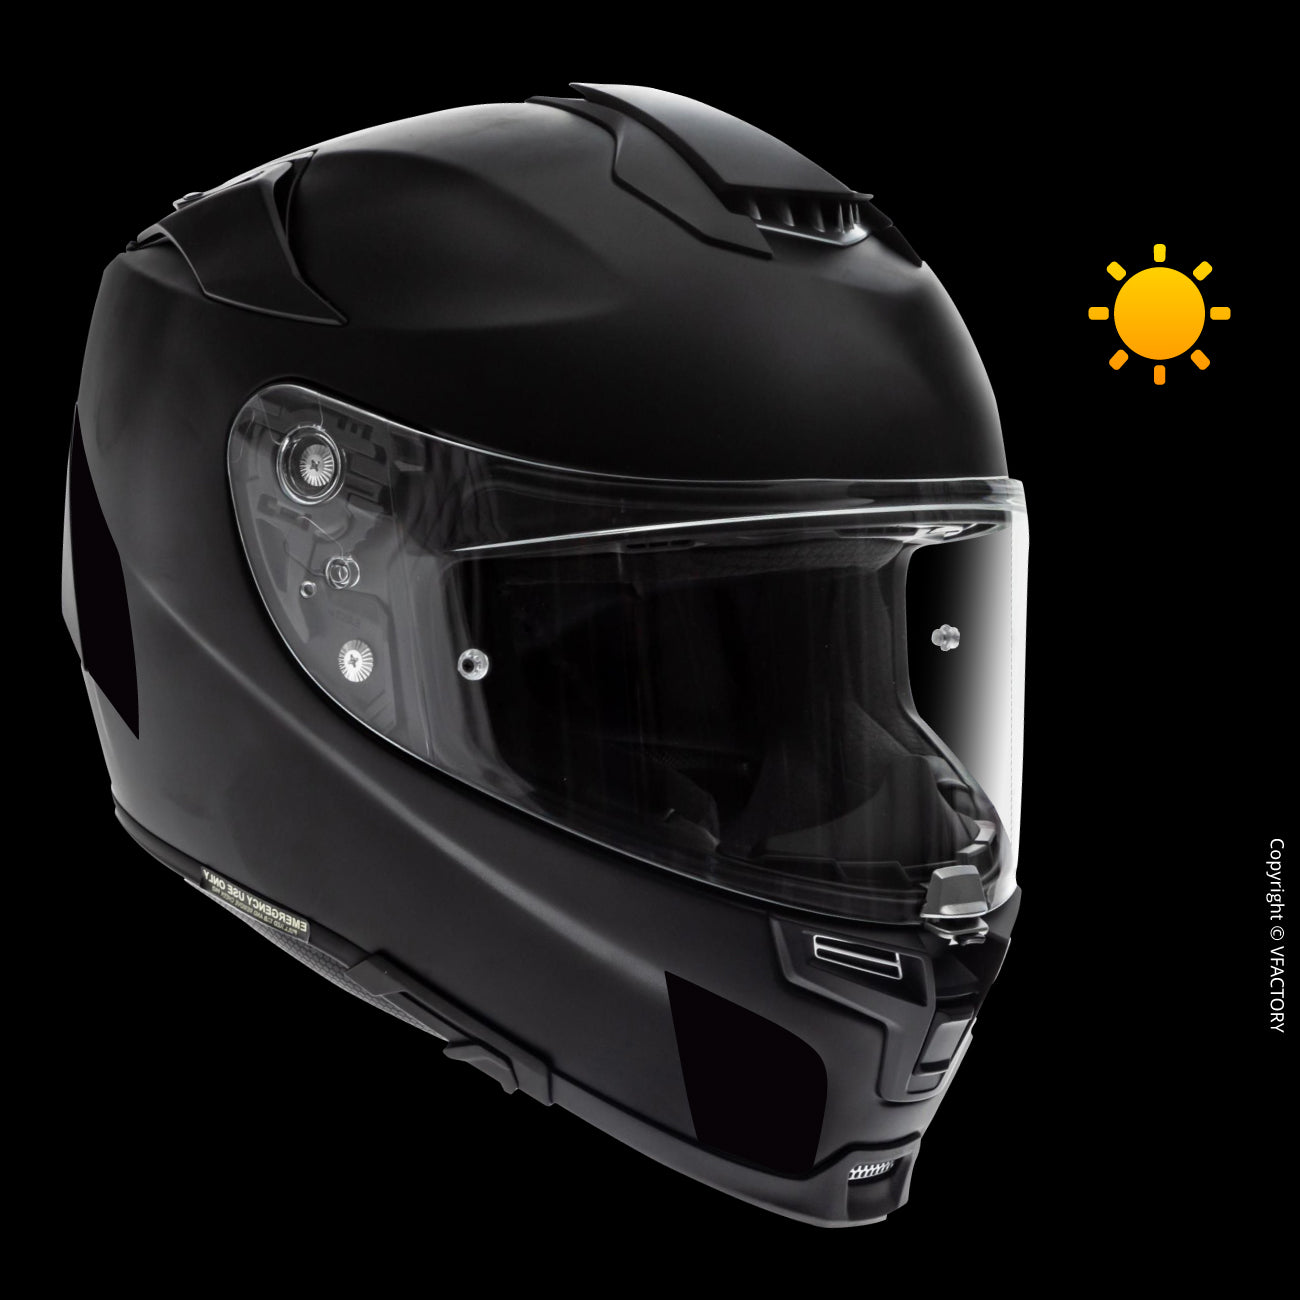 VFLUO - Kit 4 Bandes Stickers Noirs Rétro Réfléchissants pour Casque Moto -  Autocollants Homologués Dimensions FR - Haute Visibilité, Technologie 3M™ -  Discret et Design - Adhérence maximale : : Auto et moto